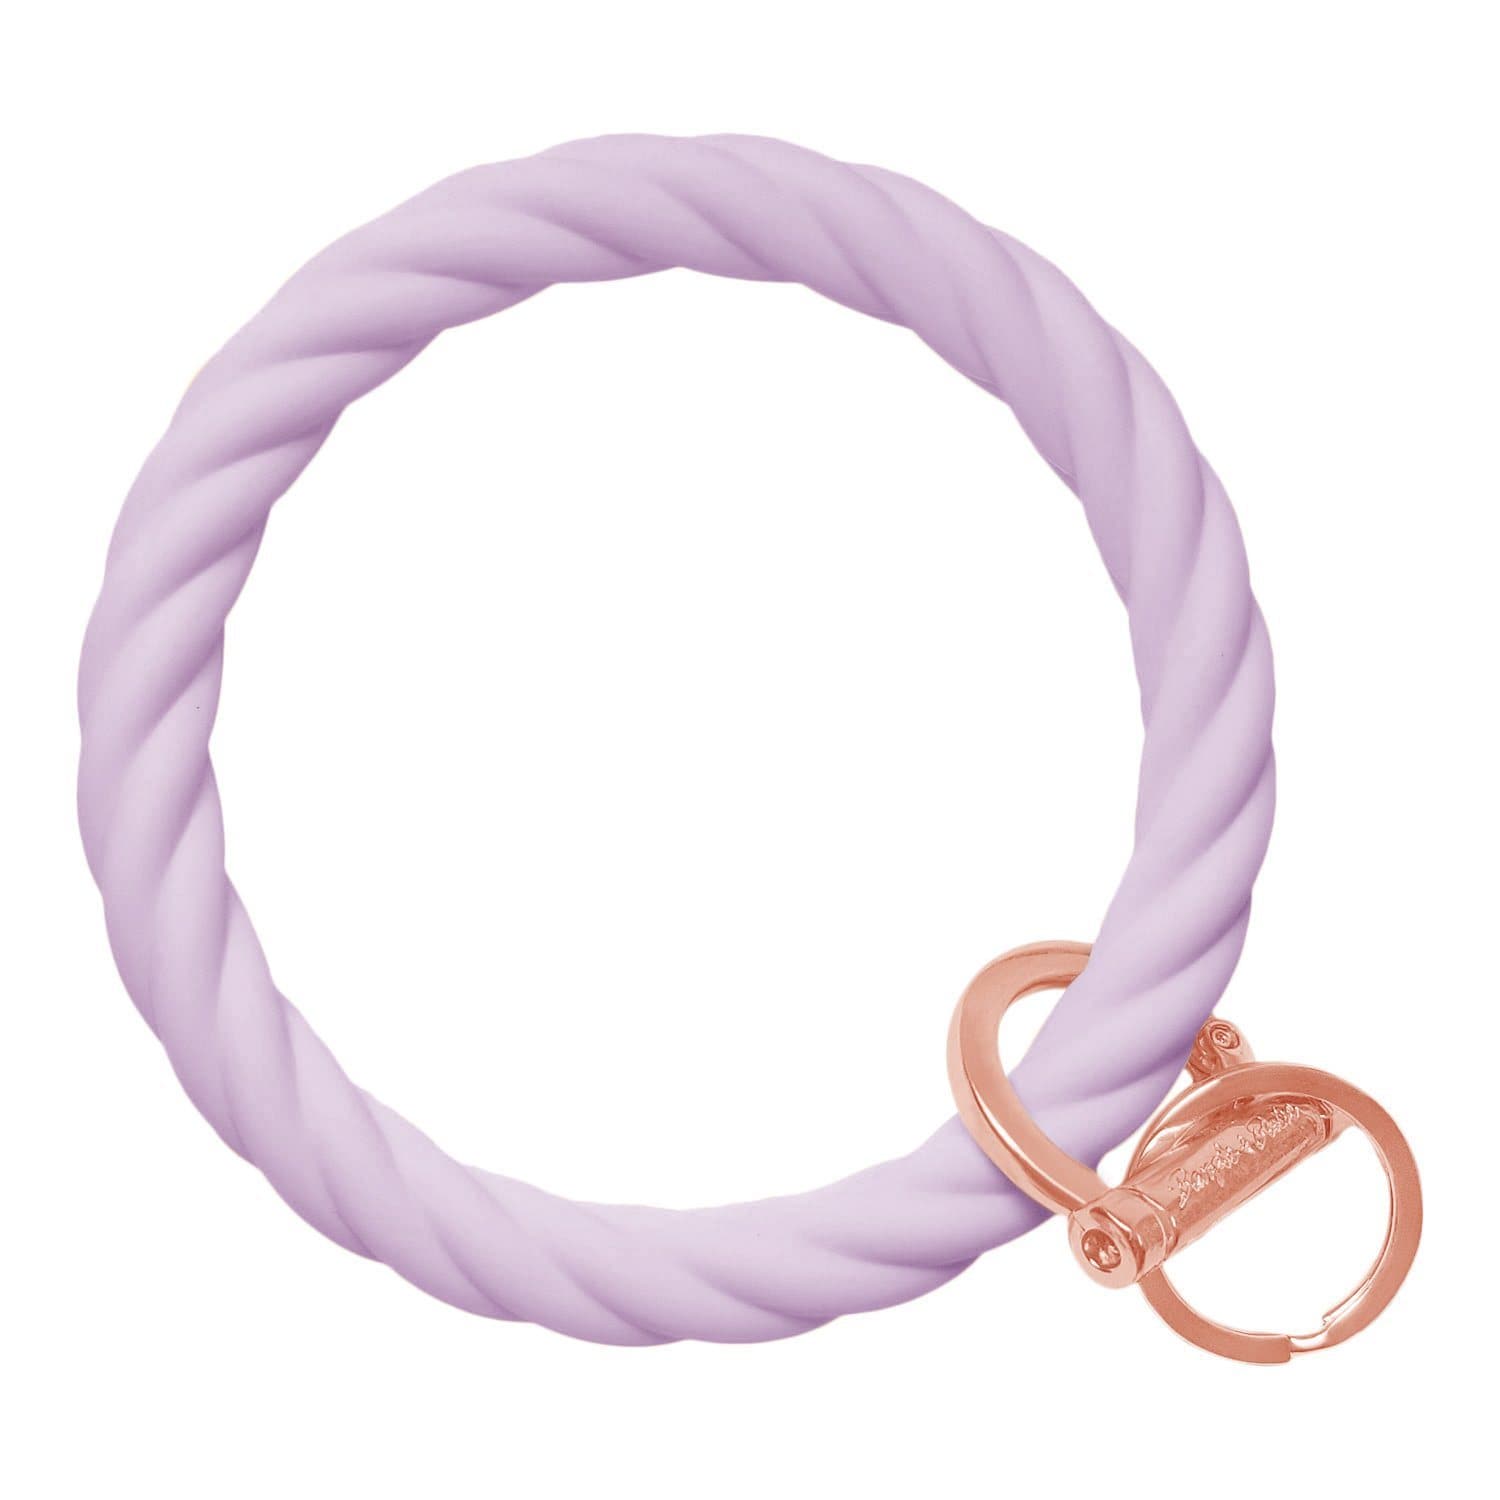 Twisted Bangle & Babe Bracelet Key Ring Twist - Pastel Lilac Rose Gold 